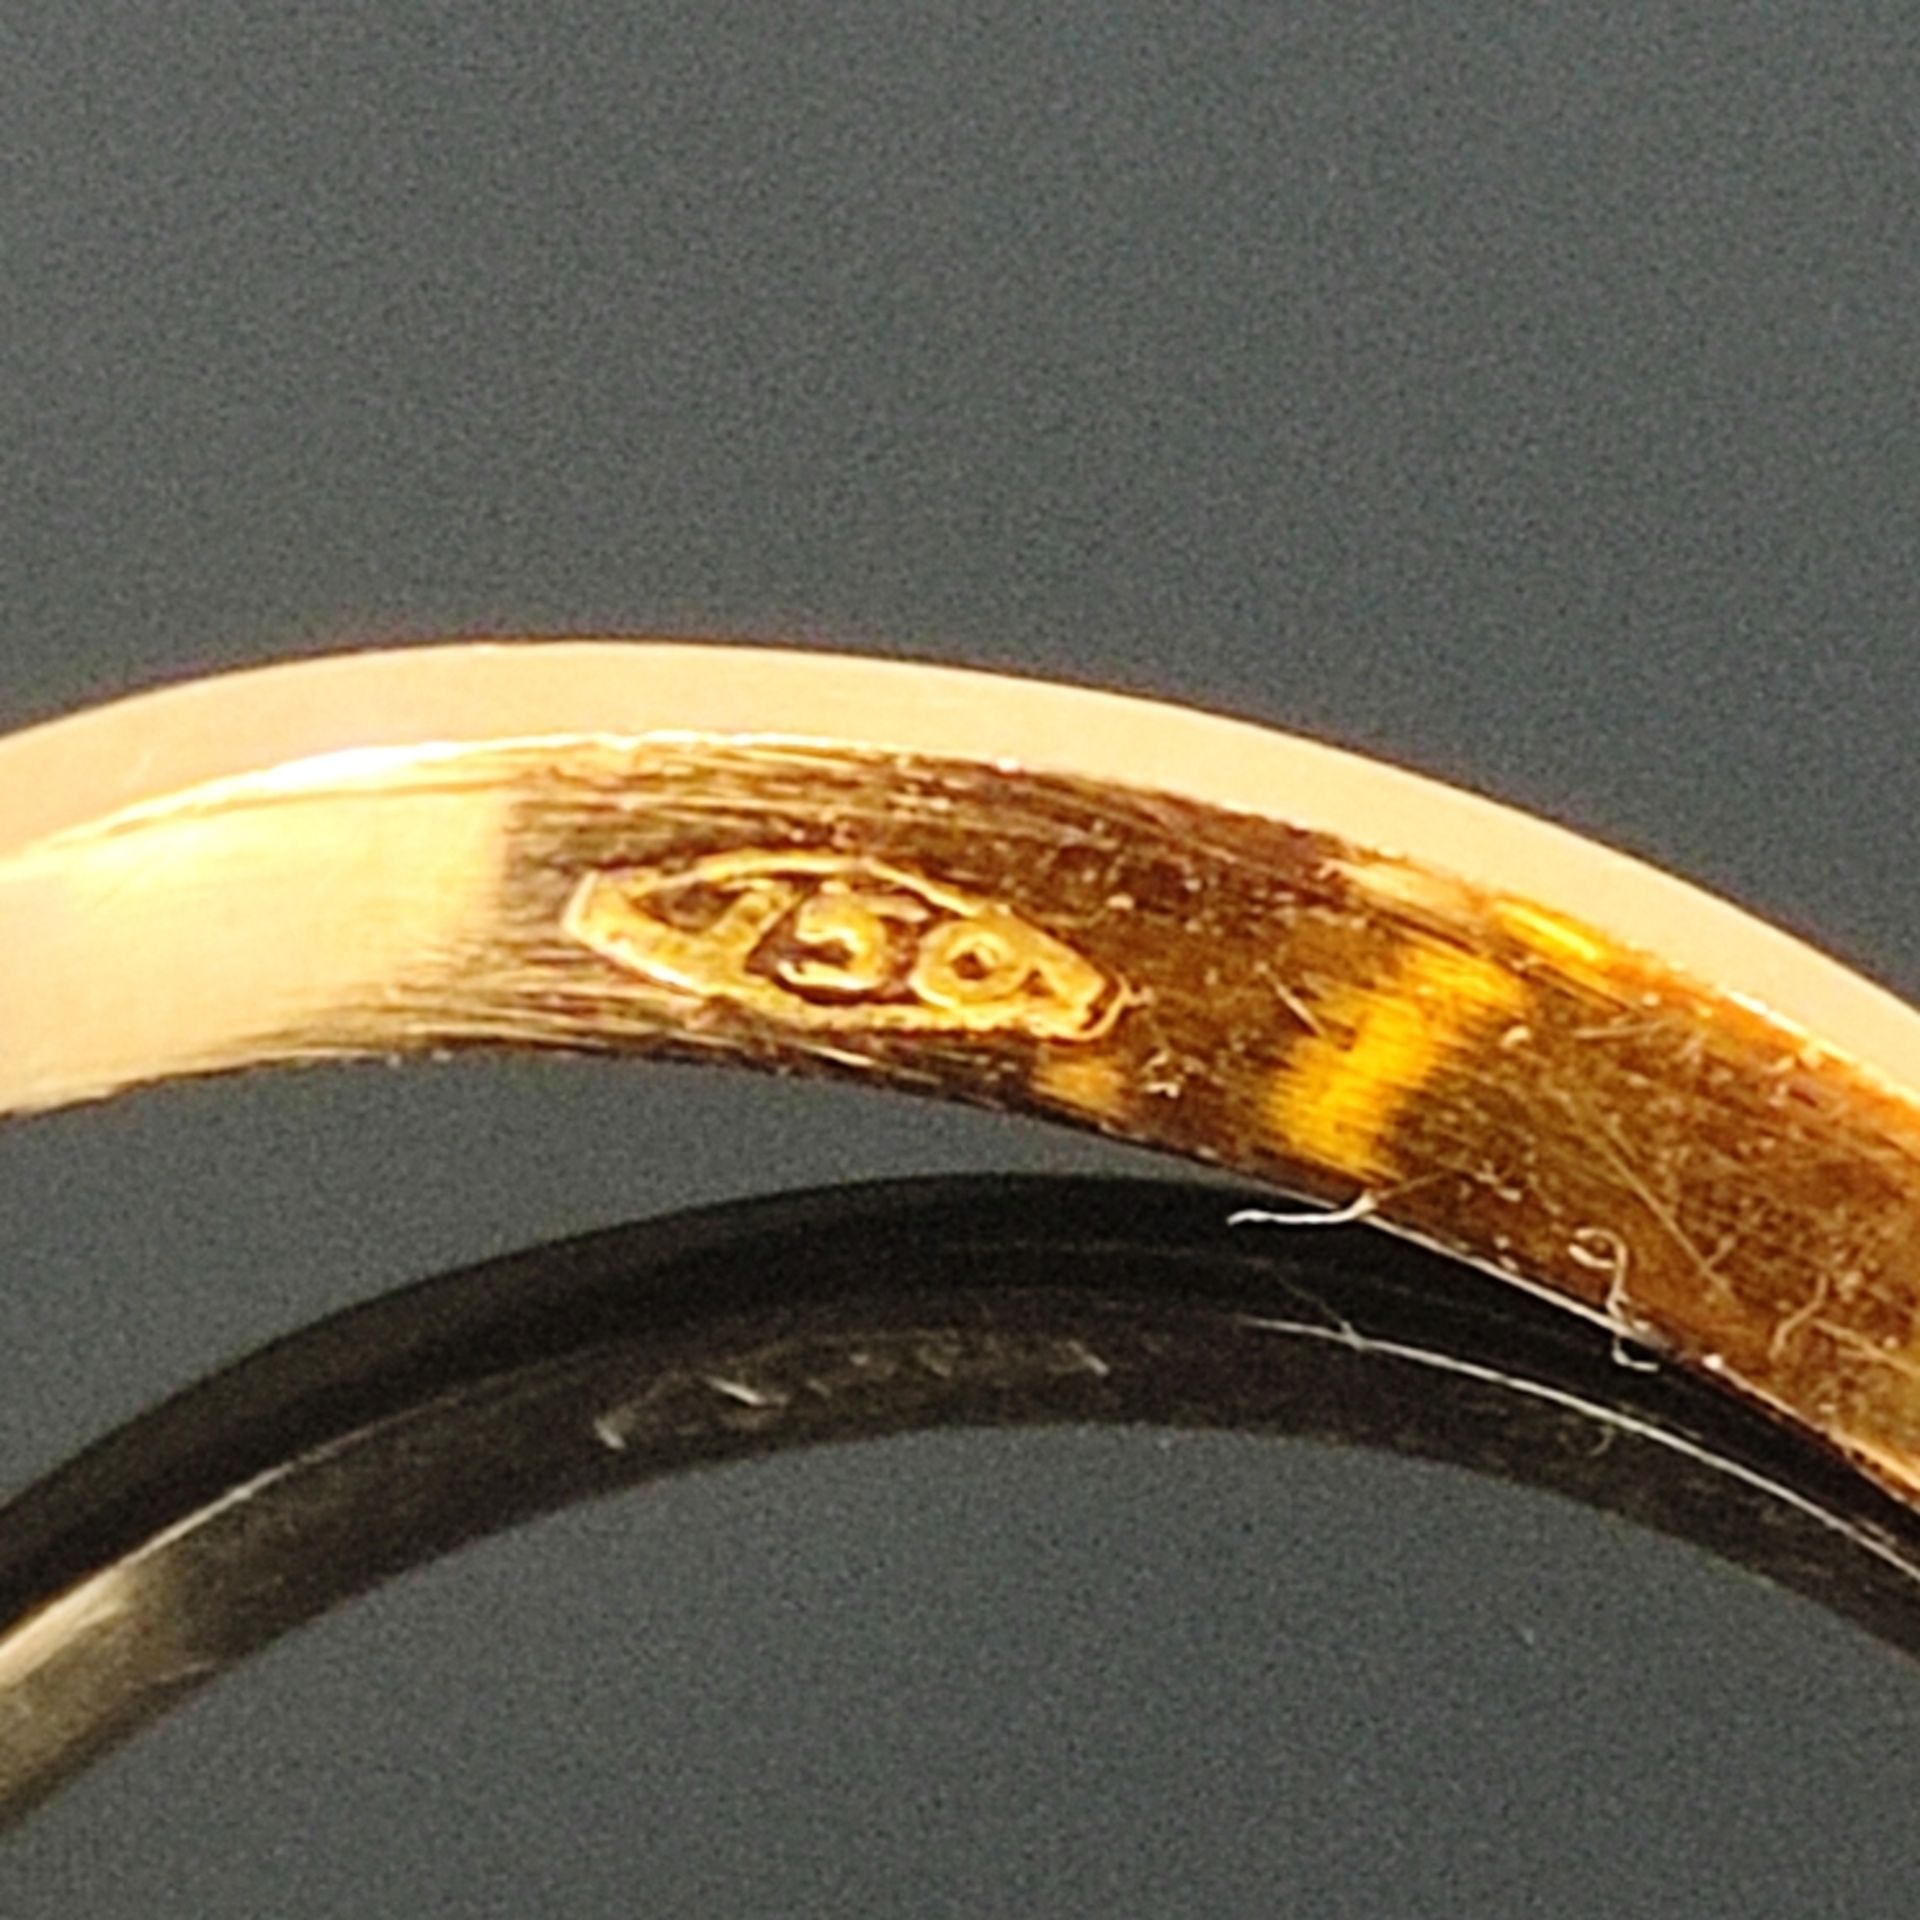 Zitrin-Ring, 750/18K Gelbgold (punziert), Gesamtgewicht 7,15g, mittig von modernen Krappen eingefas - Bild 3 aus 4